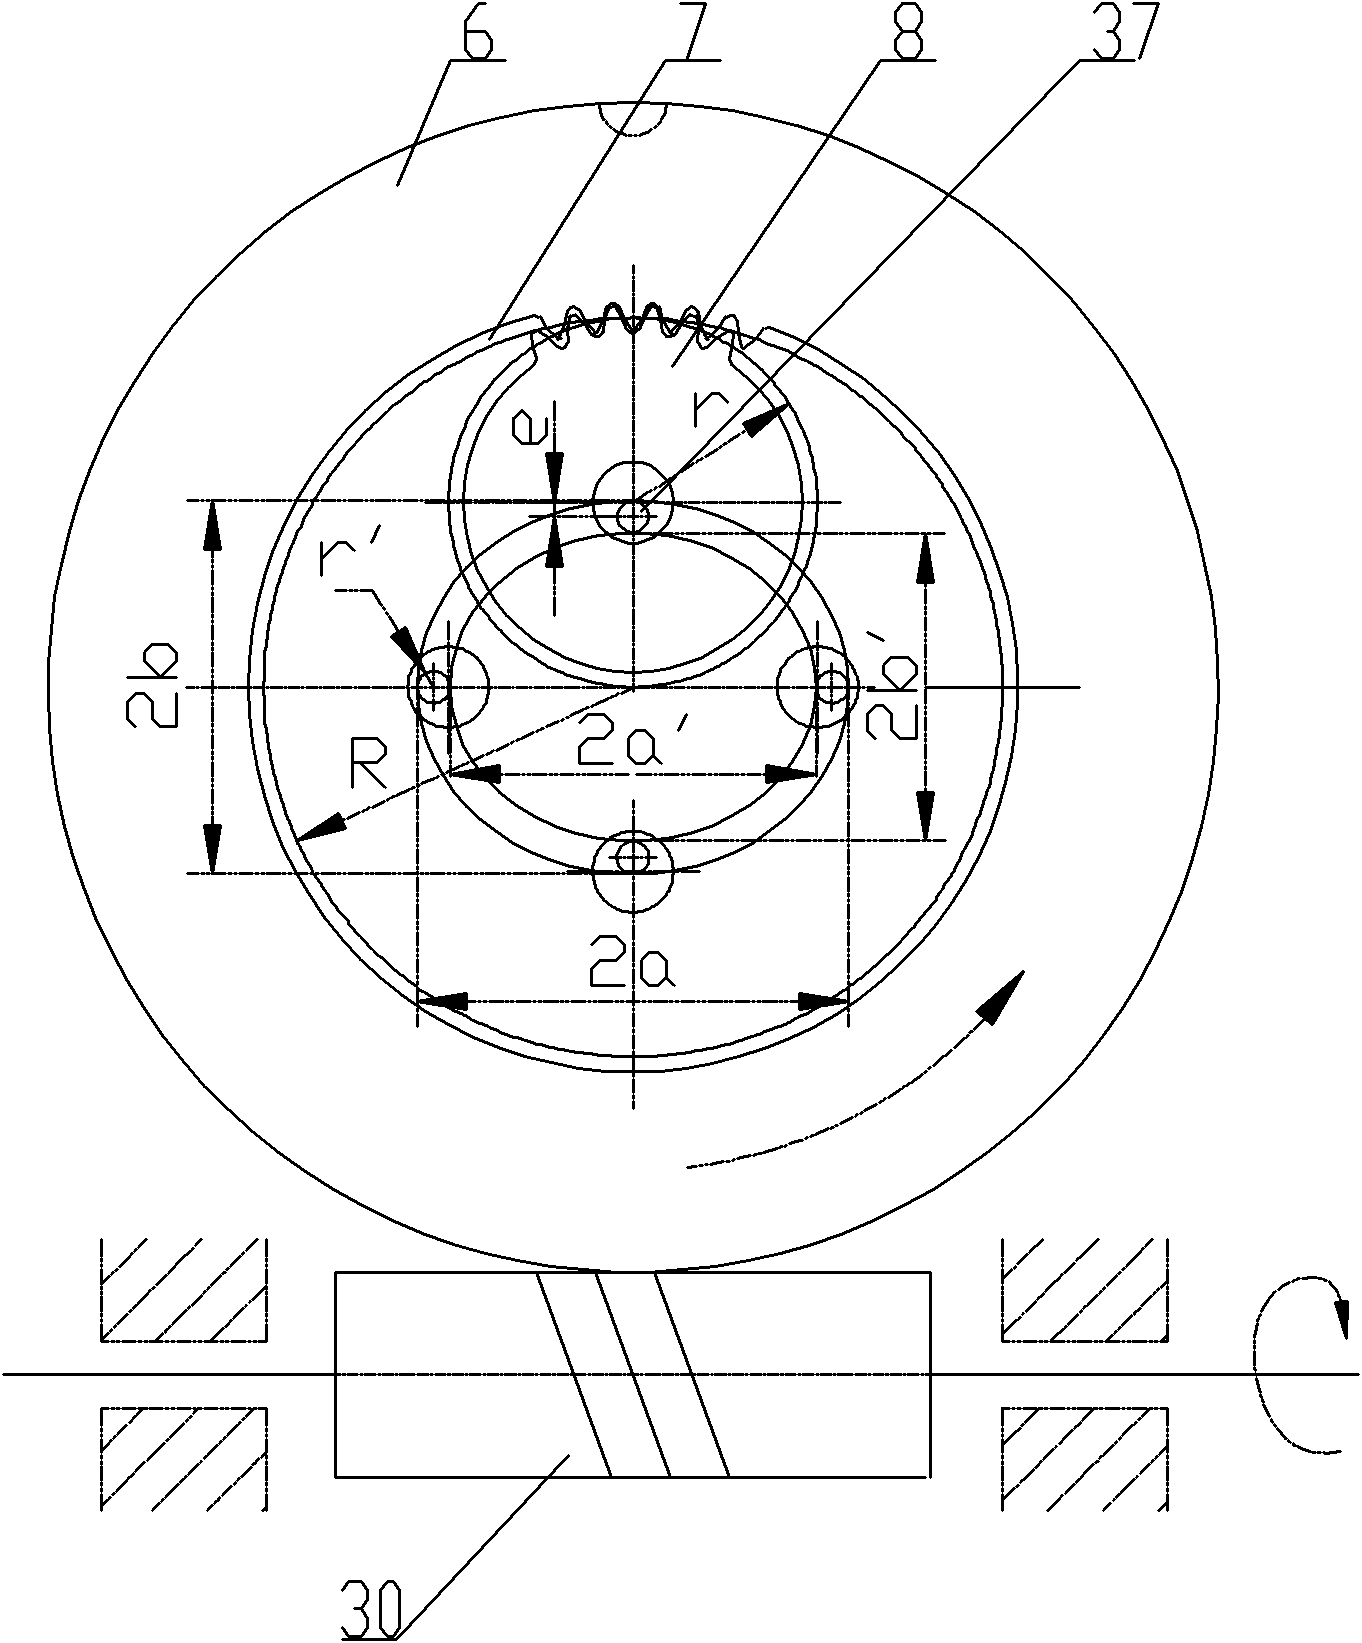 Elliptical hole machining device